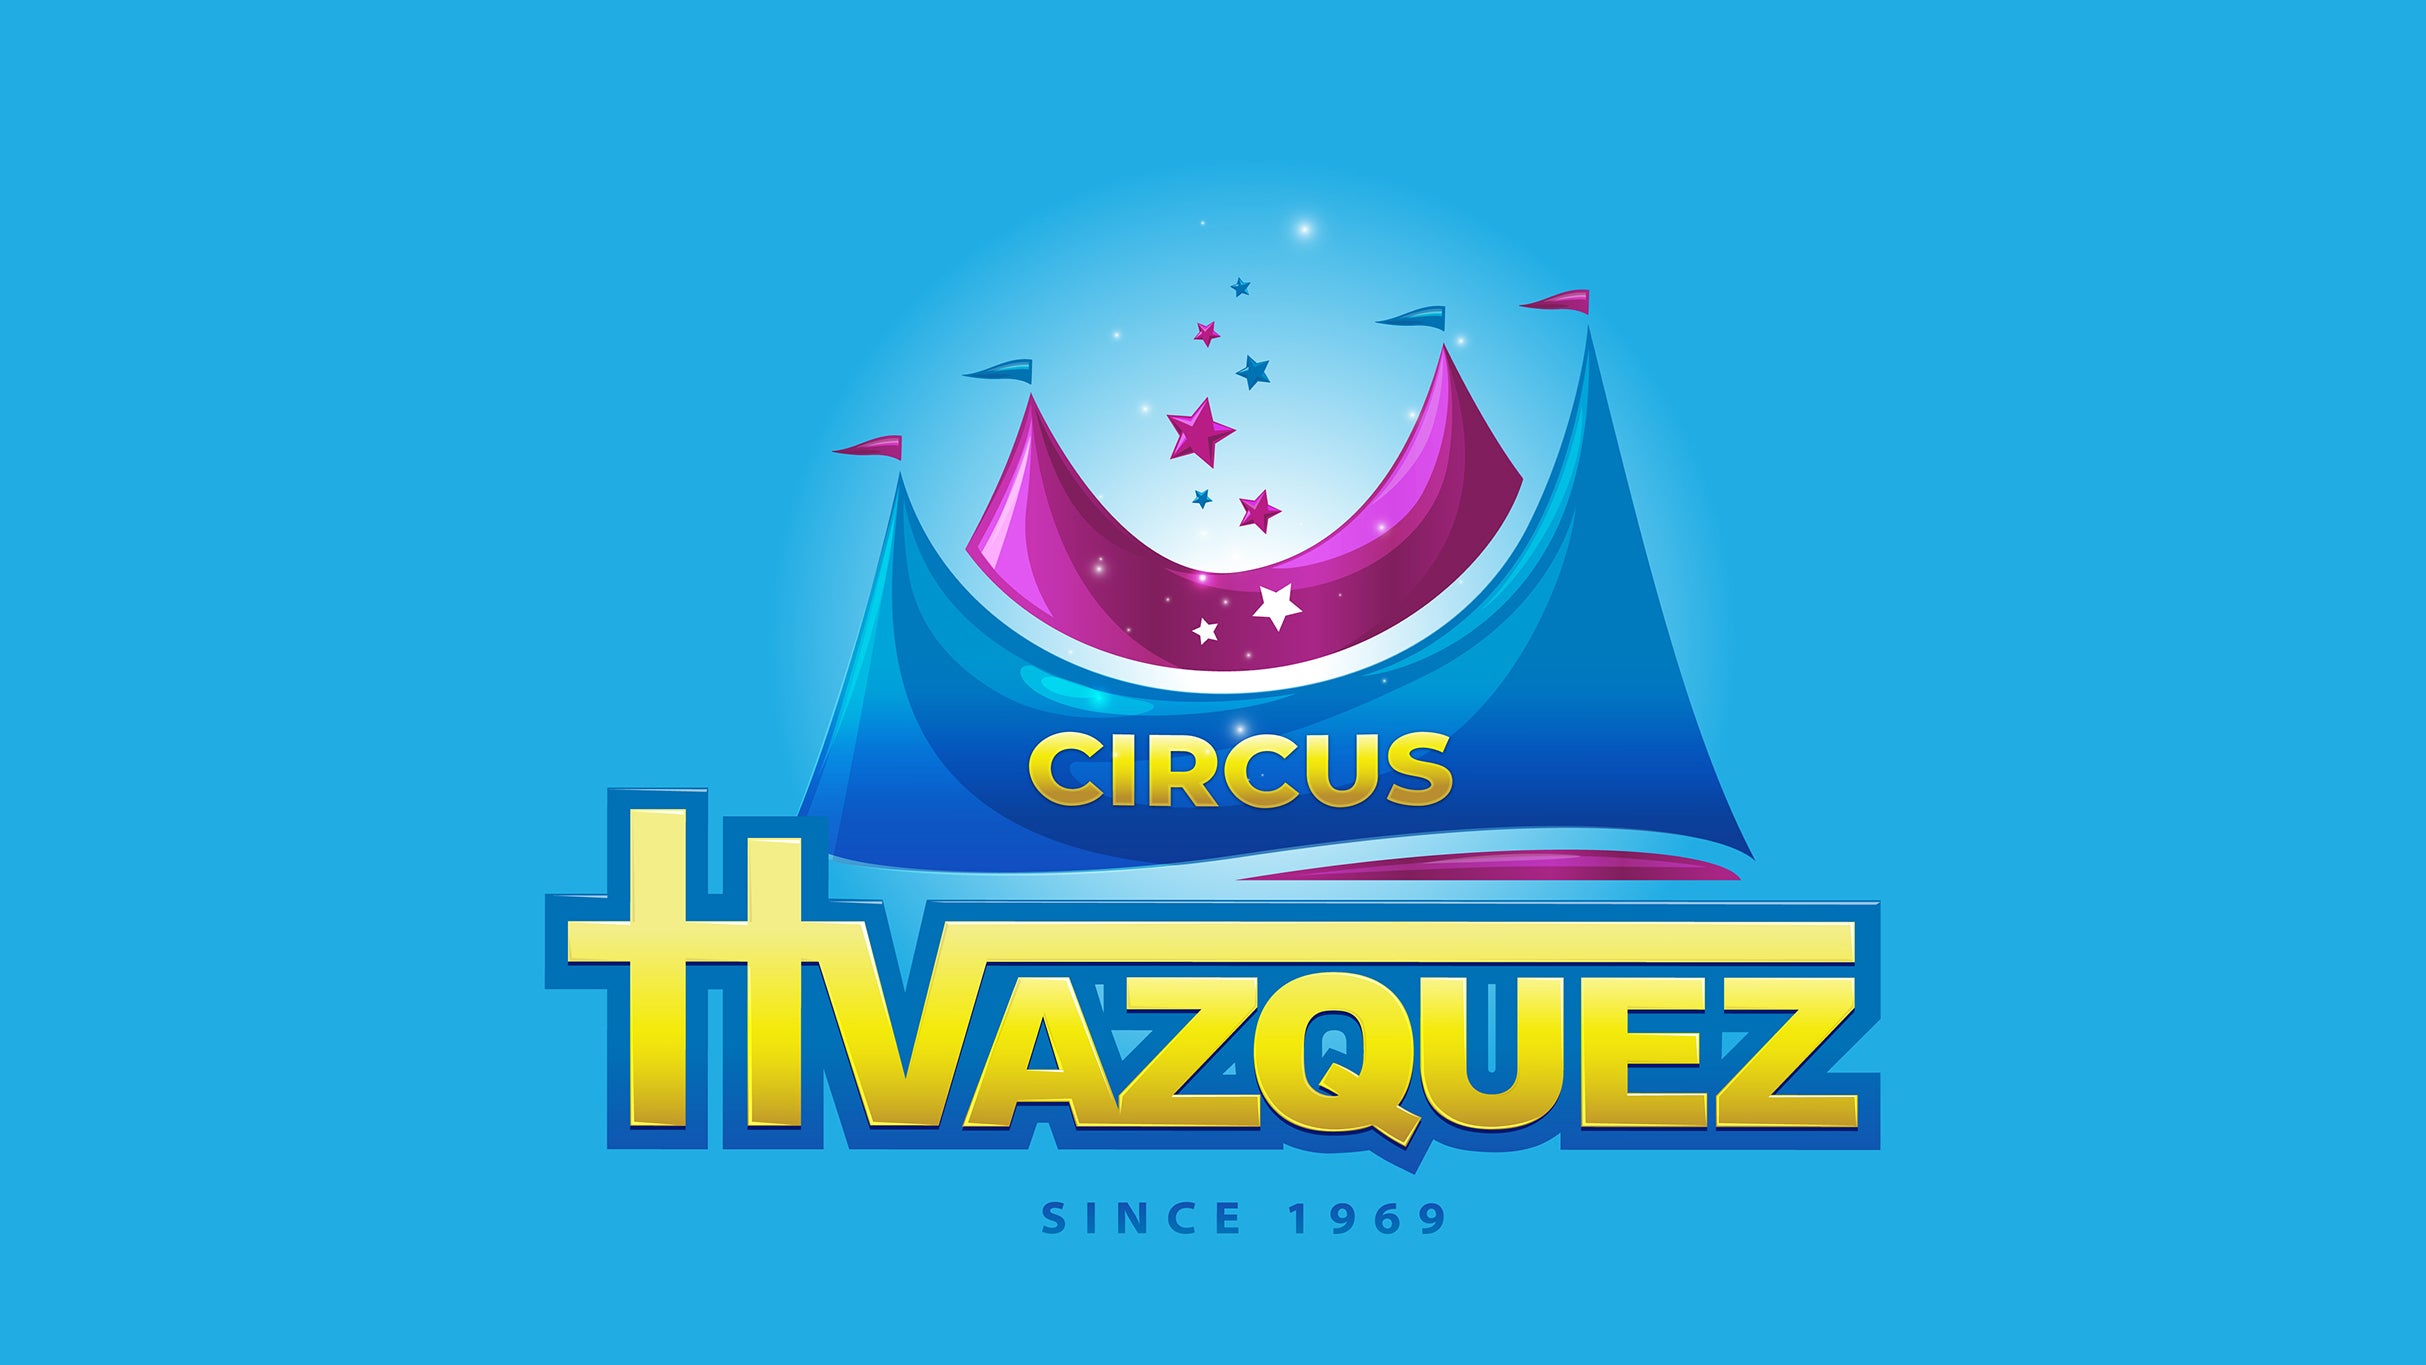 Circus Vazquez - San Antonio, TX